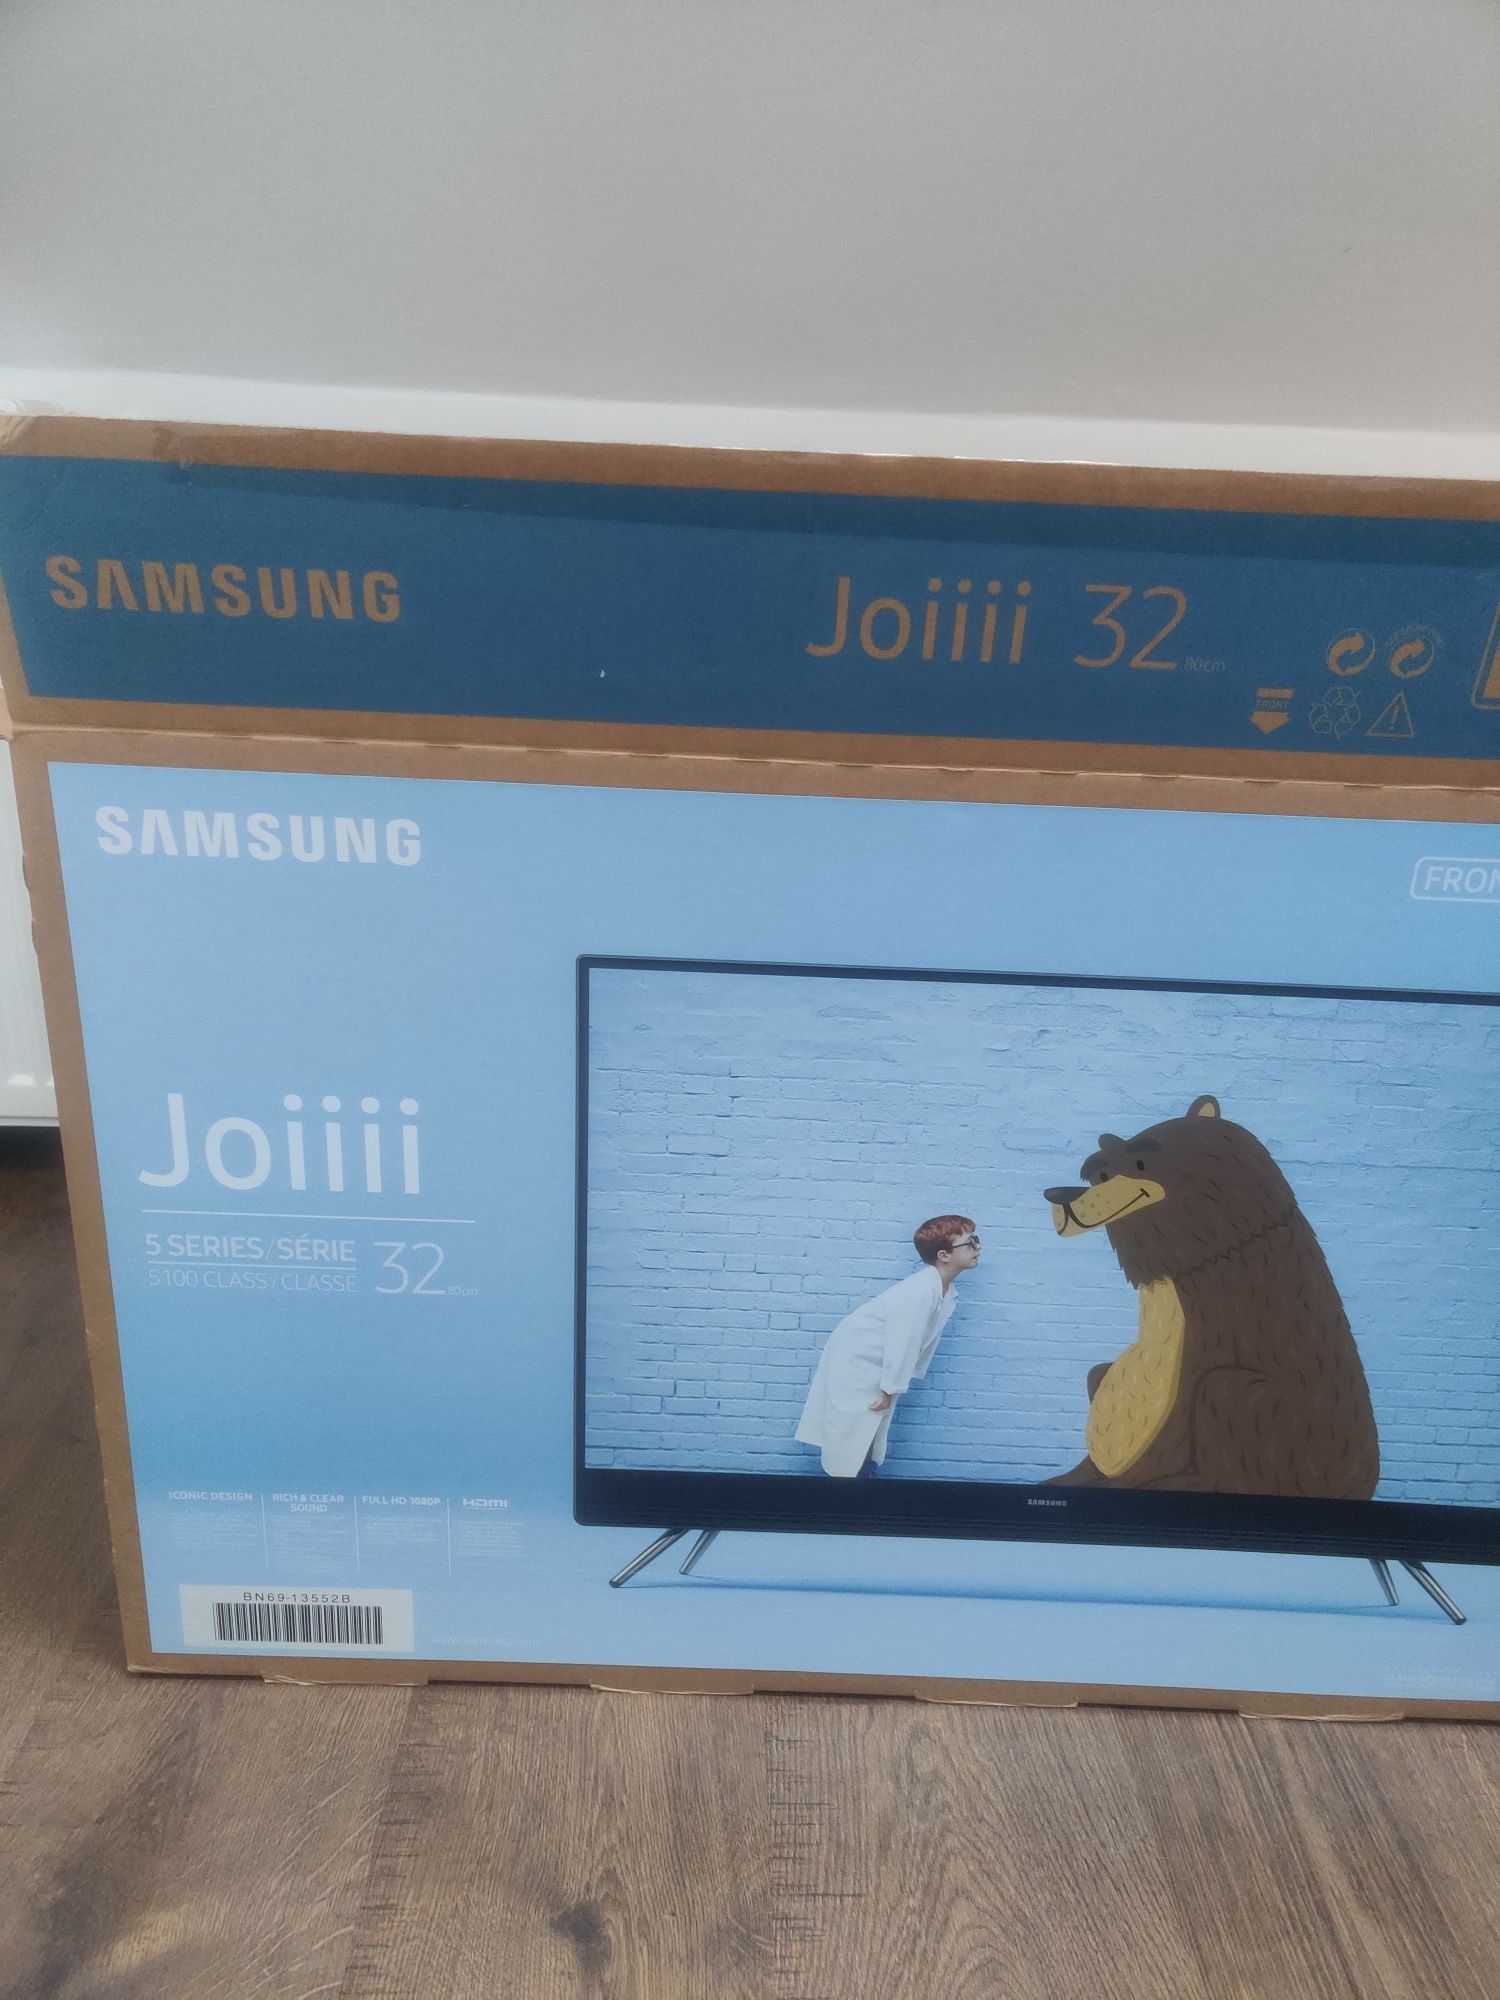 Telewizor Samsung Joiiii 32 cale